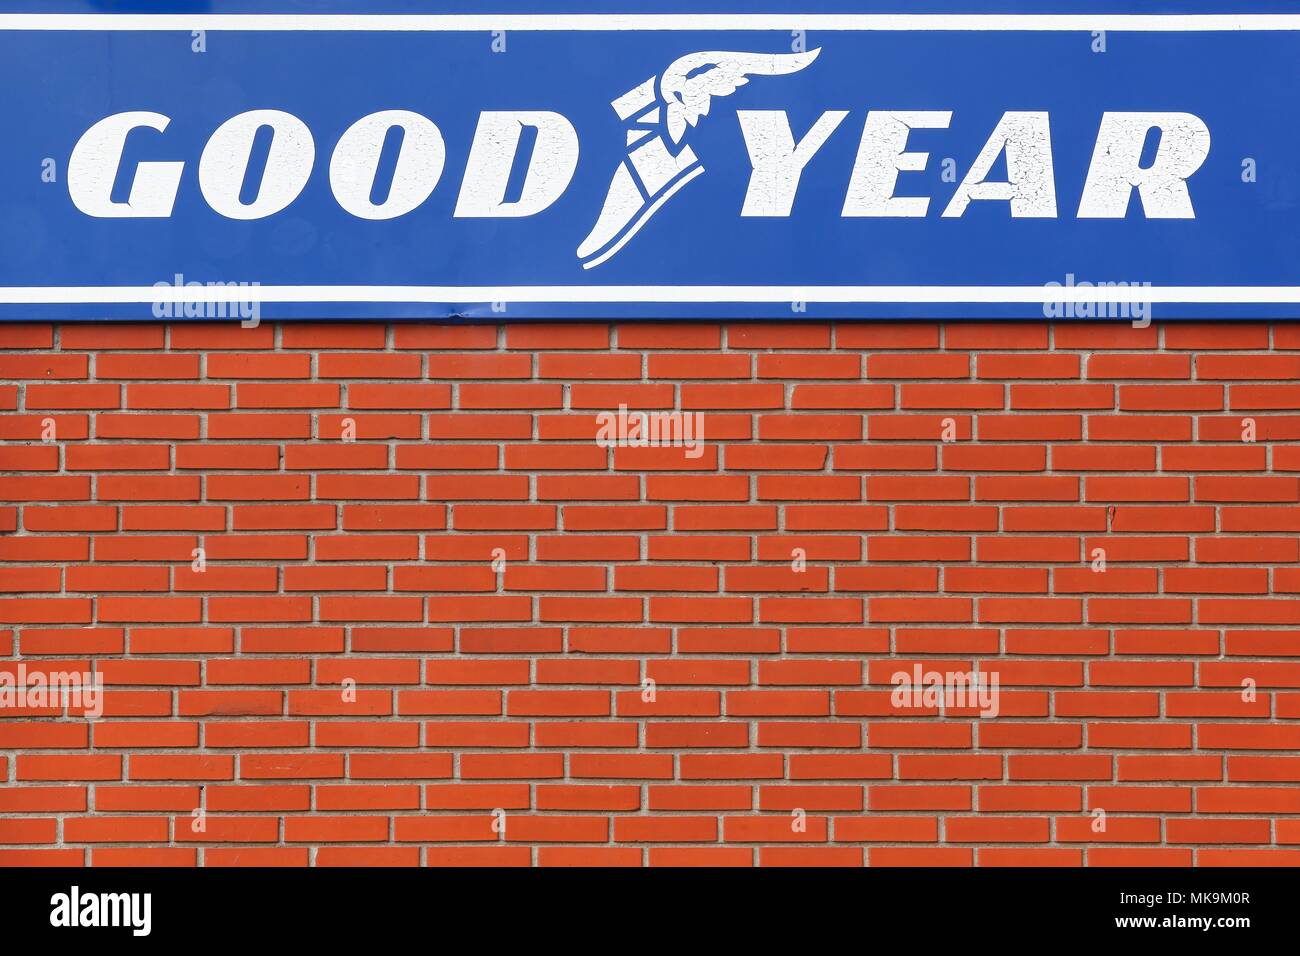 Randers, Danemark - Mars 13, 2016 : Goodyear logo sur un mur. Goodyear est une multinationale américaine de l'entreprise de fabrication de pneus Banque D'Images